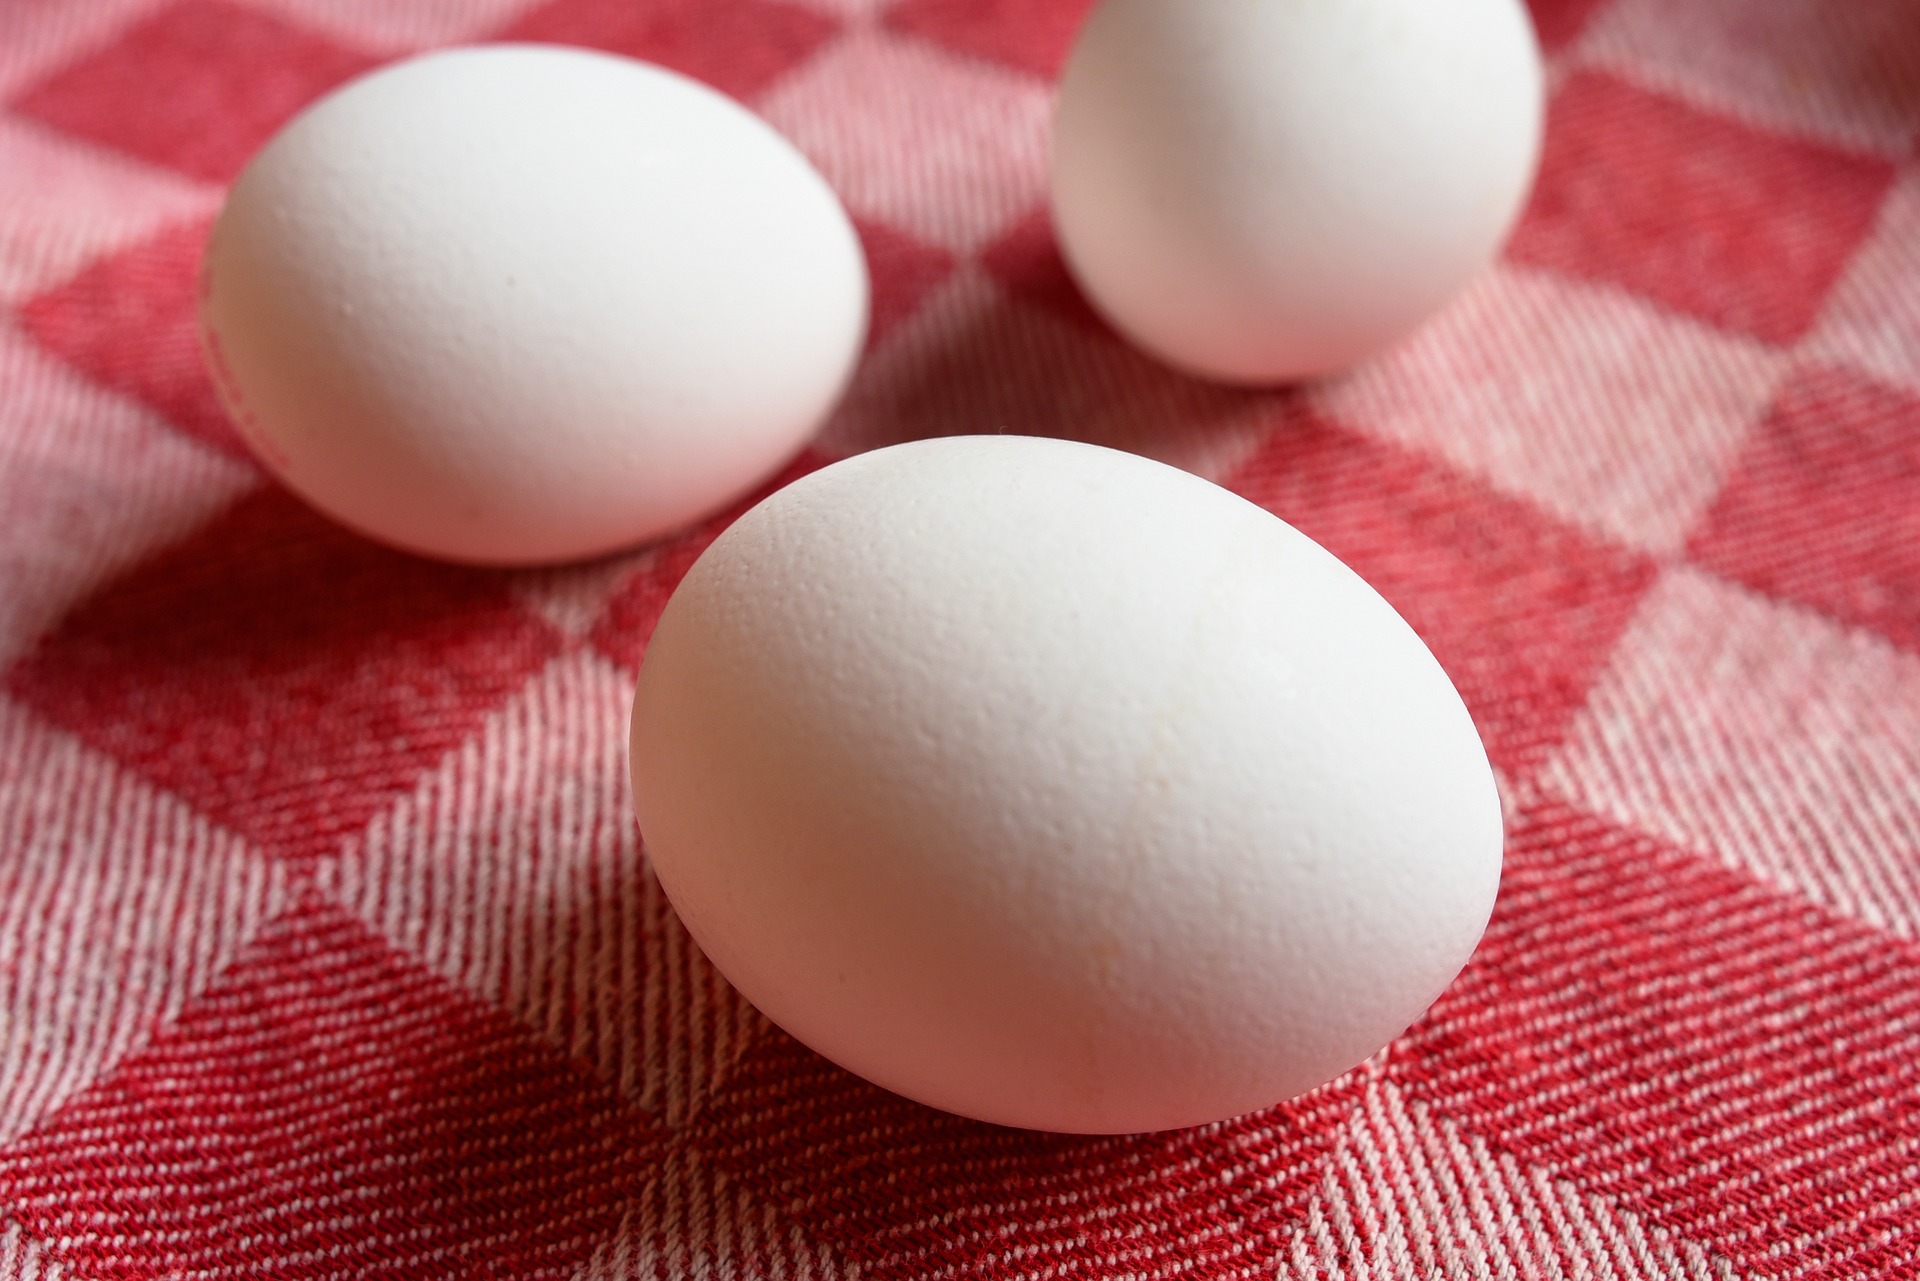 Estudo do JAMA sobre o ovo gera polêmica em torno do alimento. Médica nutróloga da ABRAN fala do assunto.